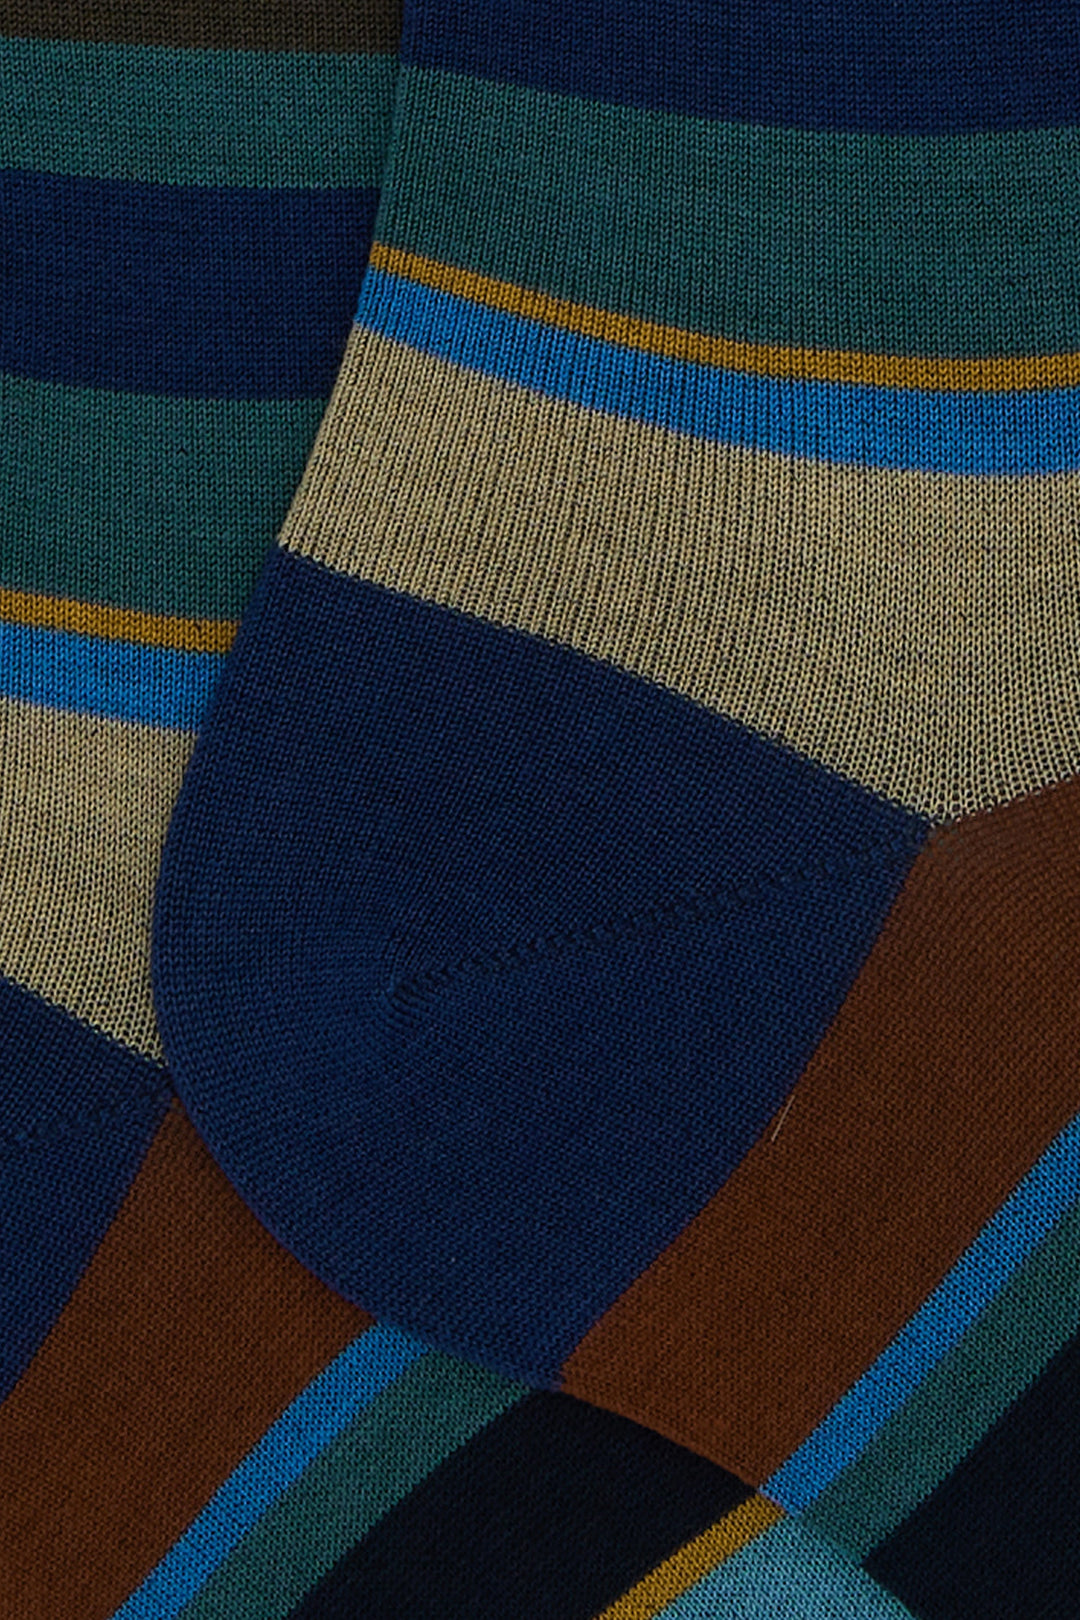 GALLO Calze lunghe cotone righe multicolor blu - Mancinelli 1954